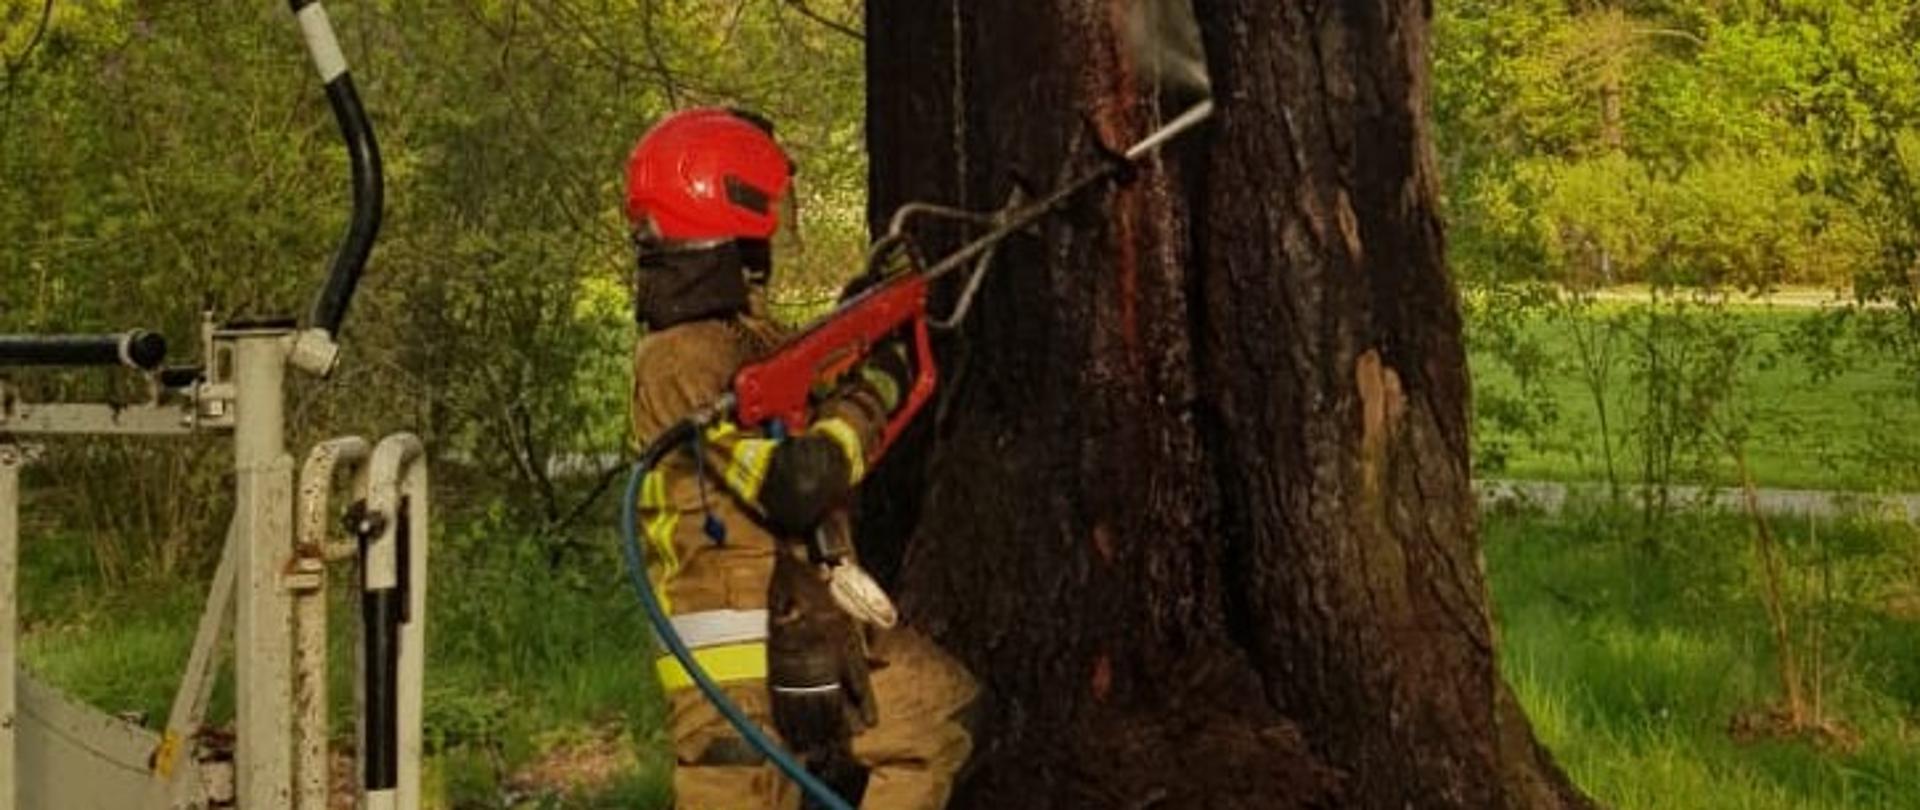 Na zdjęciu widać strażaka stojącego przed drzewem. Strażak trzyma w ręku urządzanie, które nazywa się kobra. Strażak znajduje się w parku. 